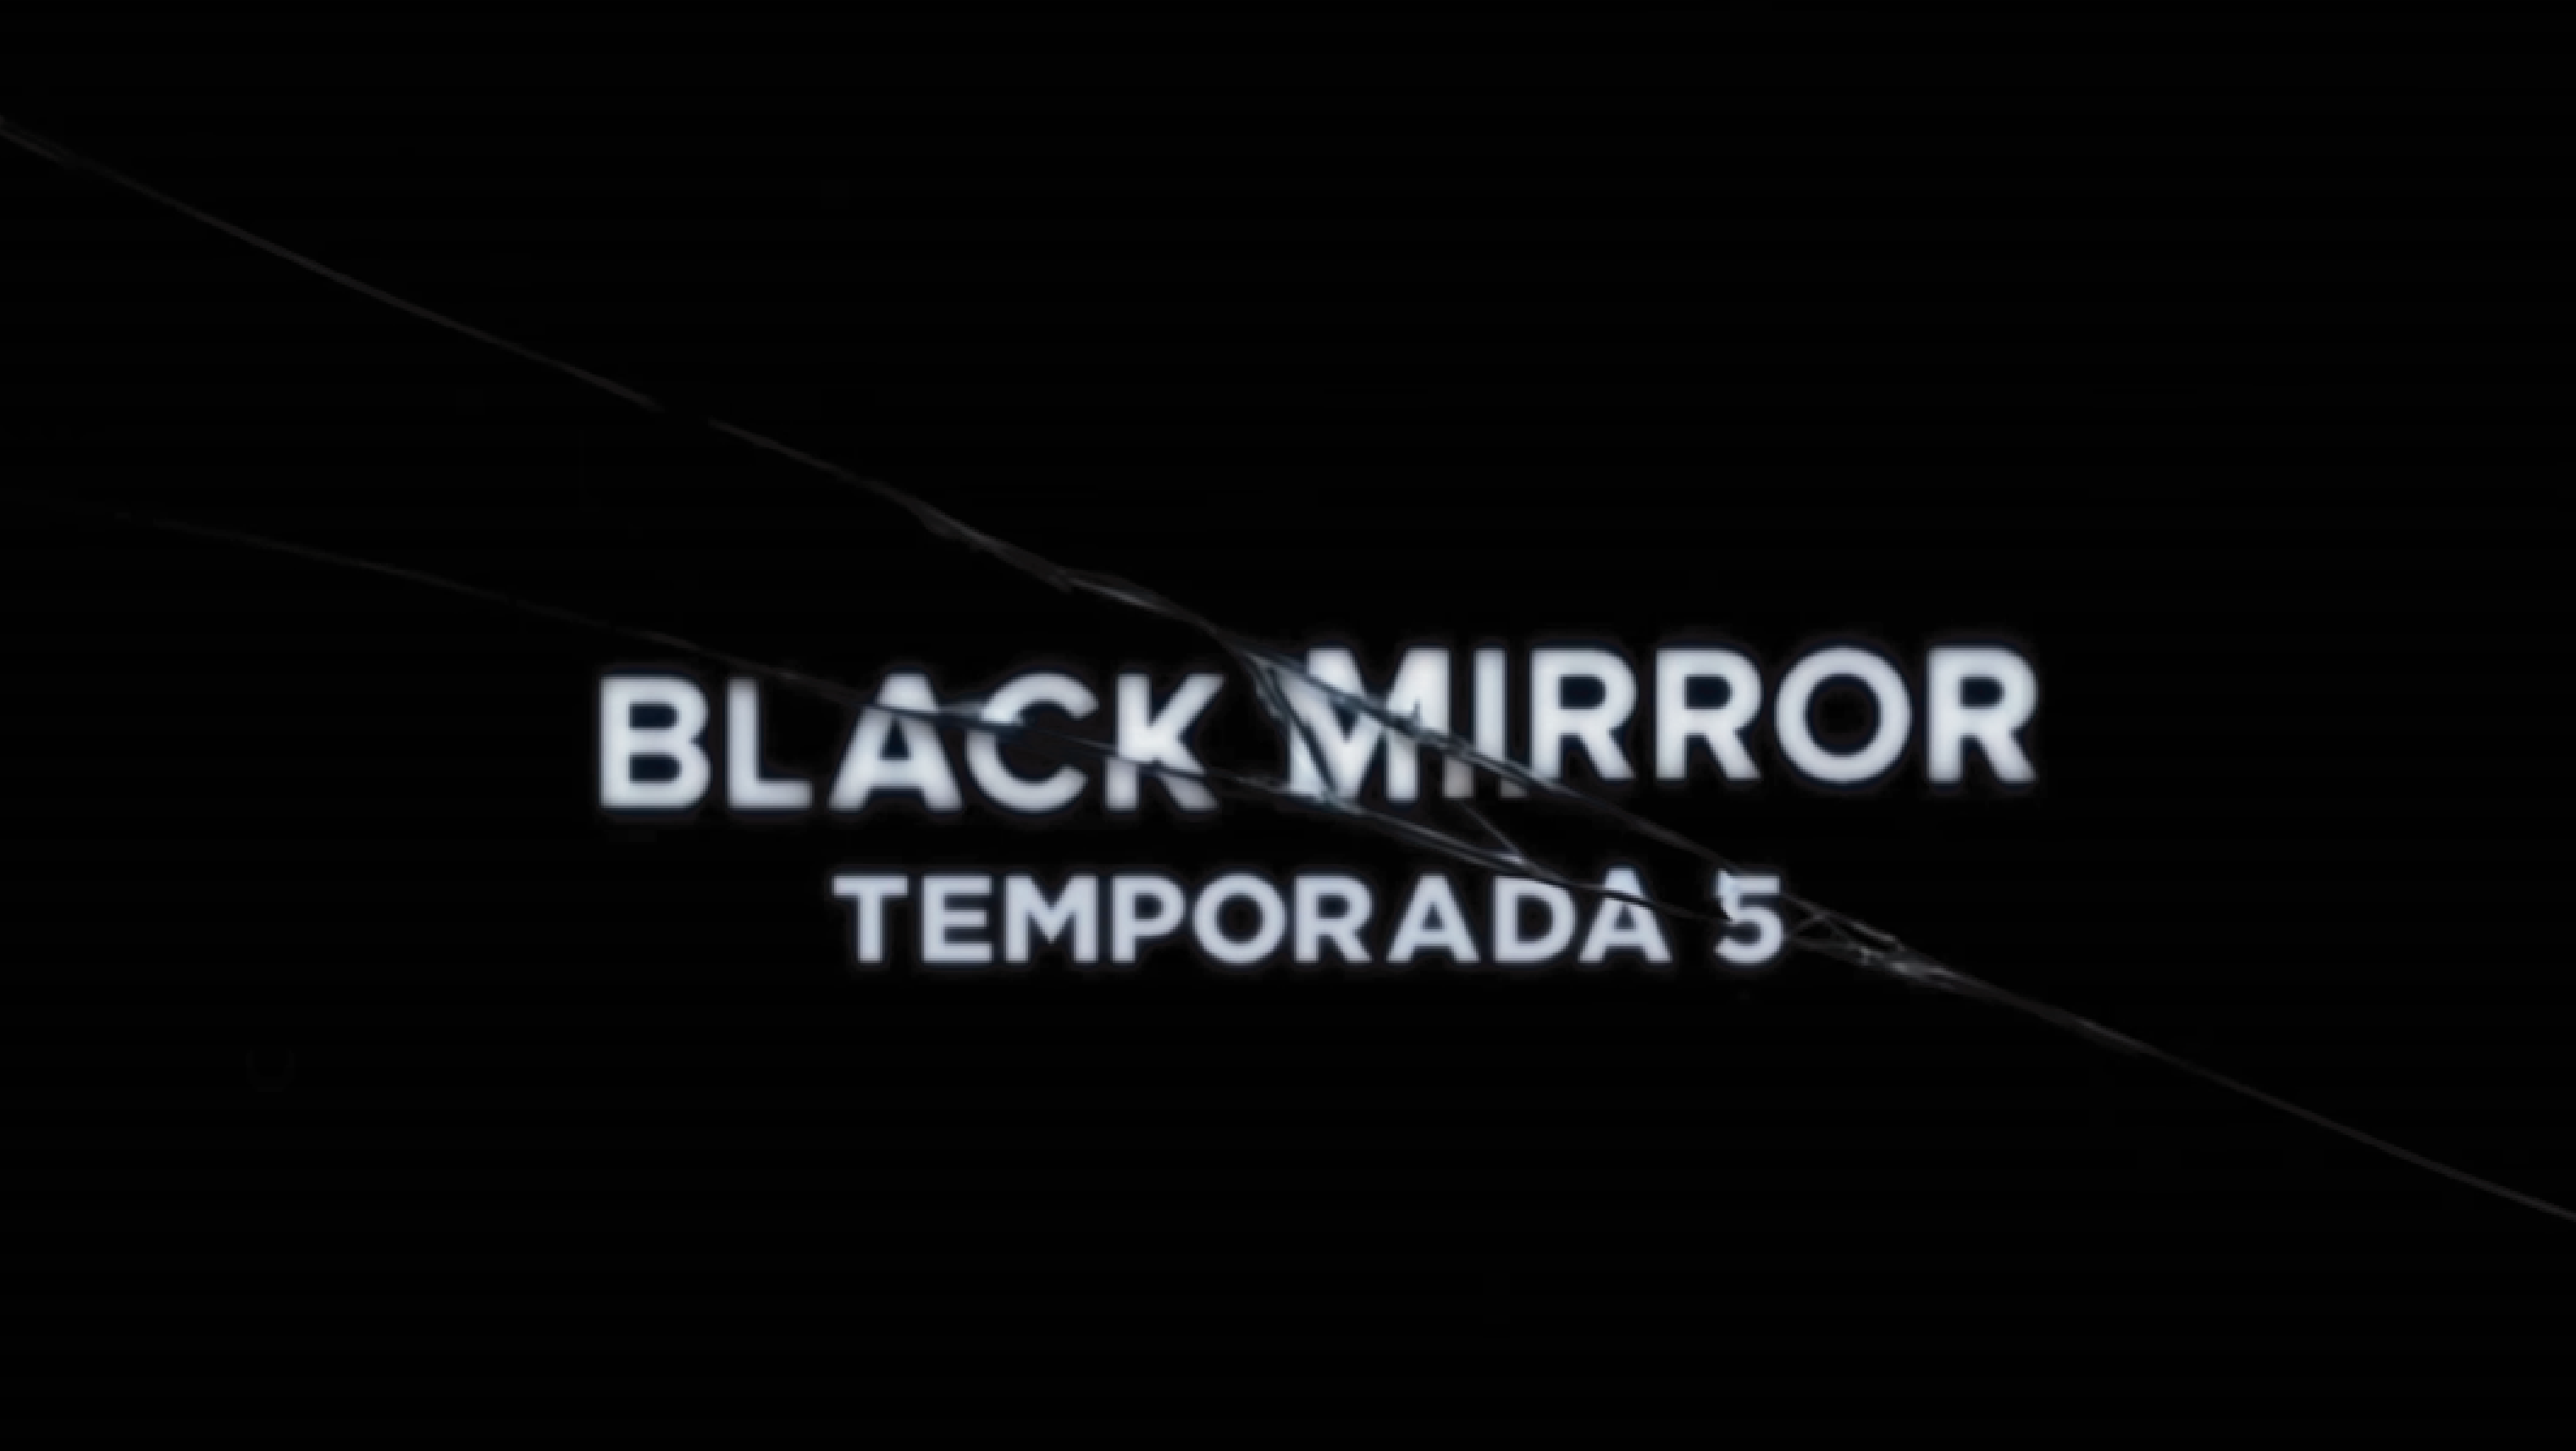 Black Mirror estrena nuevos adelantos